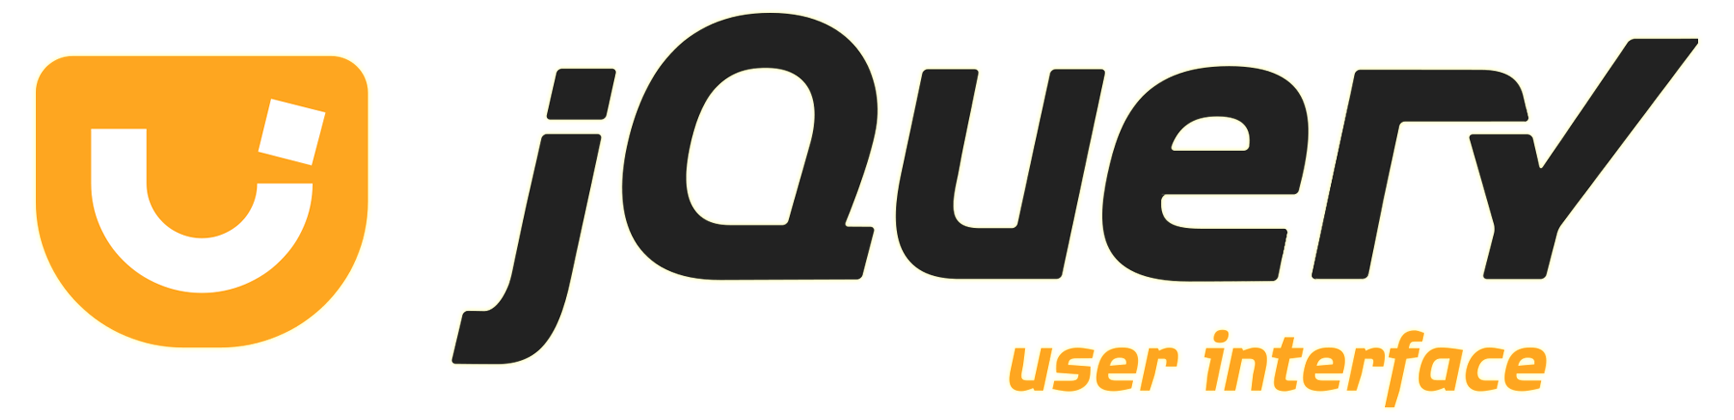 Jquery ui. UI logo. JQUERY logo. U I logo.